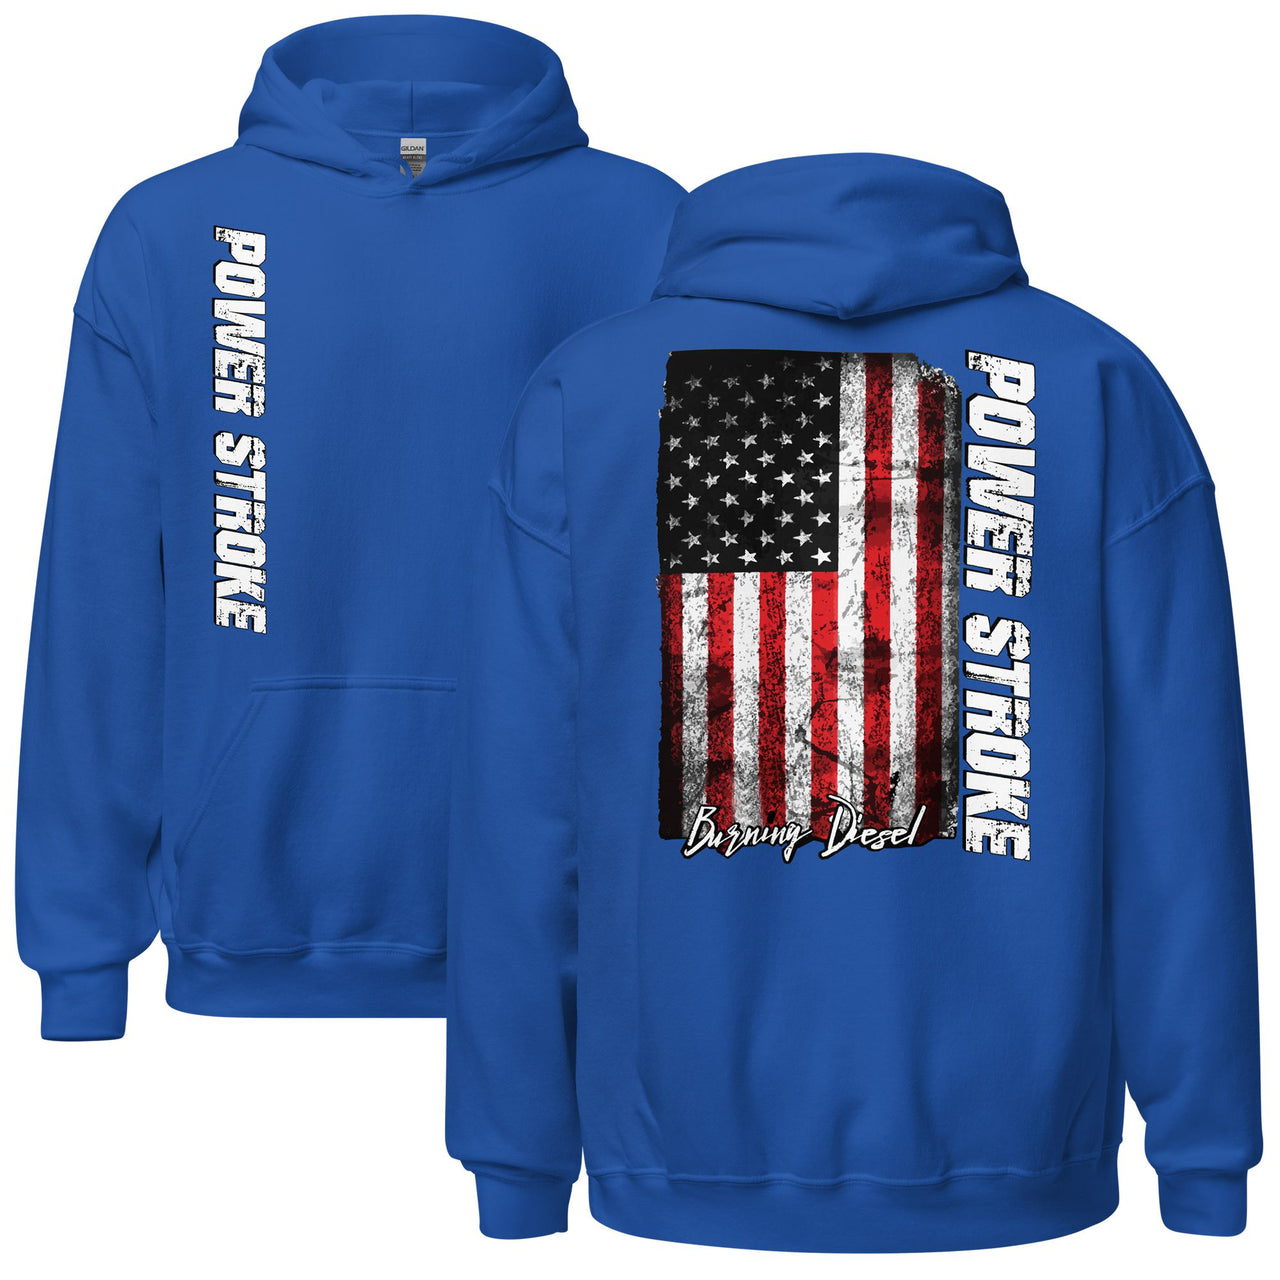 Powerstroke Hoodie with American Flag in blue